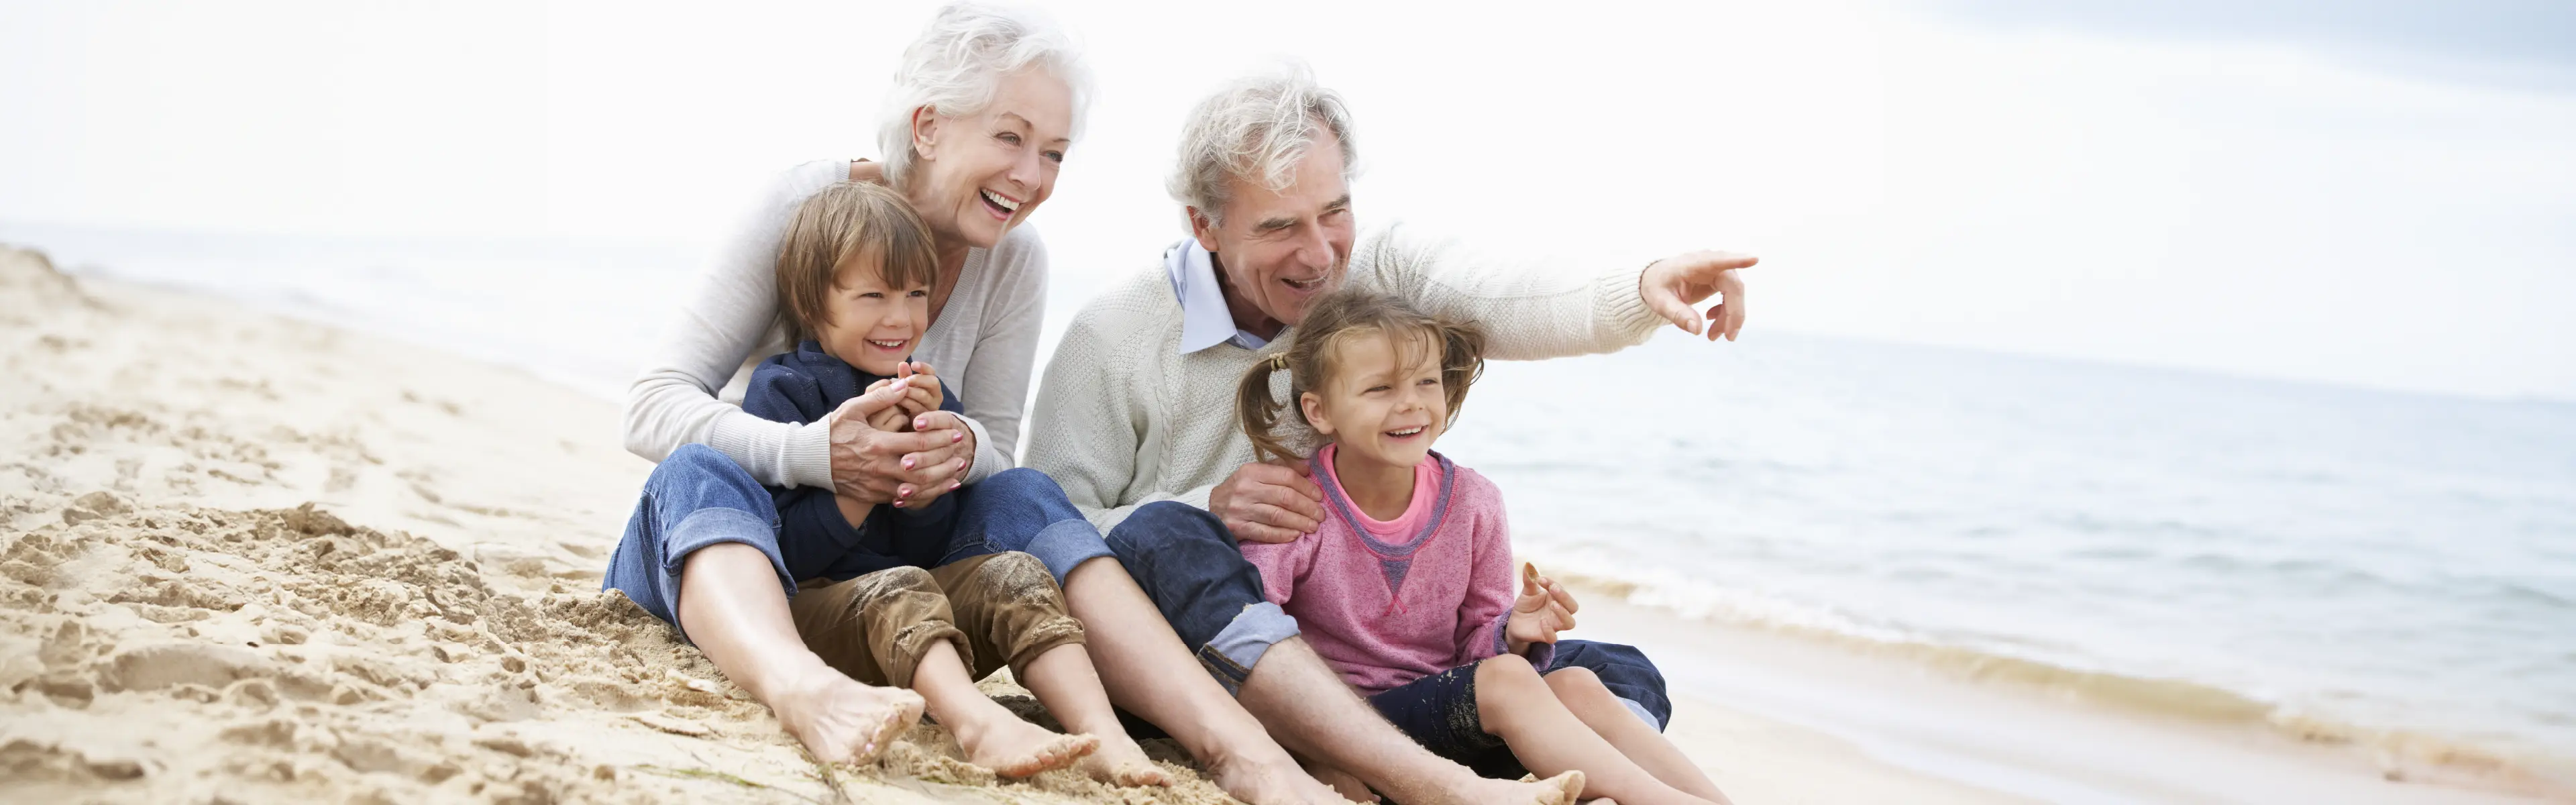 besteforeldre og barnebarn smilende på stranda, bestefar peker på noe utenfor bildet